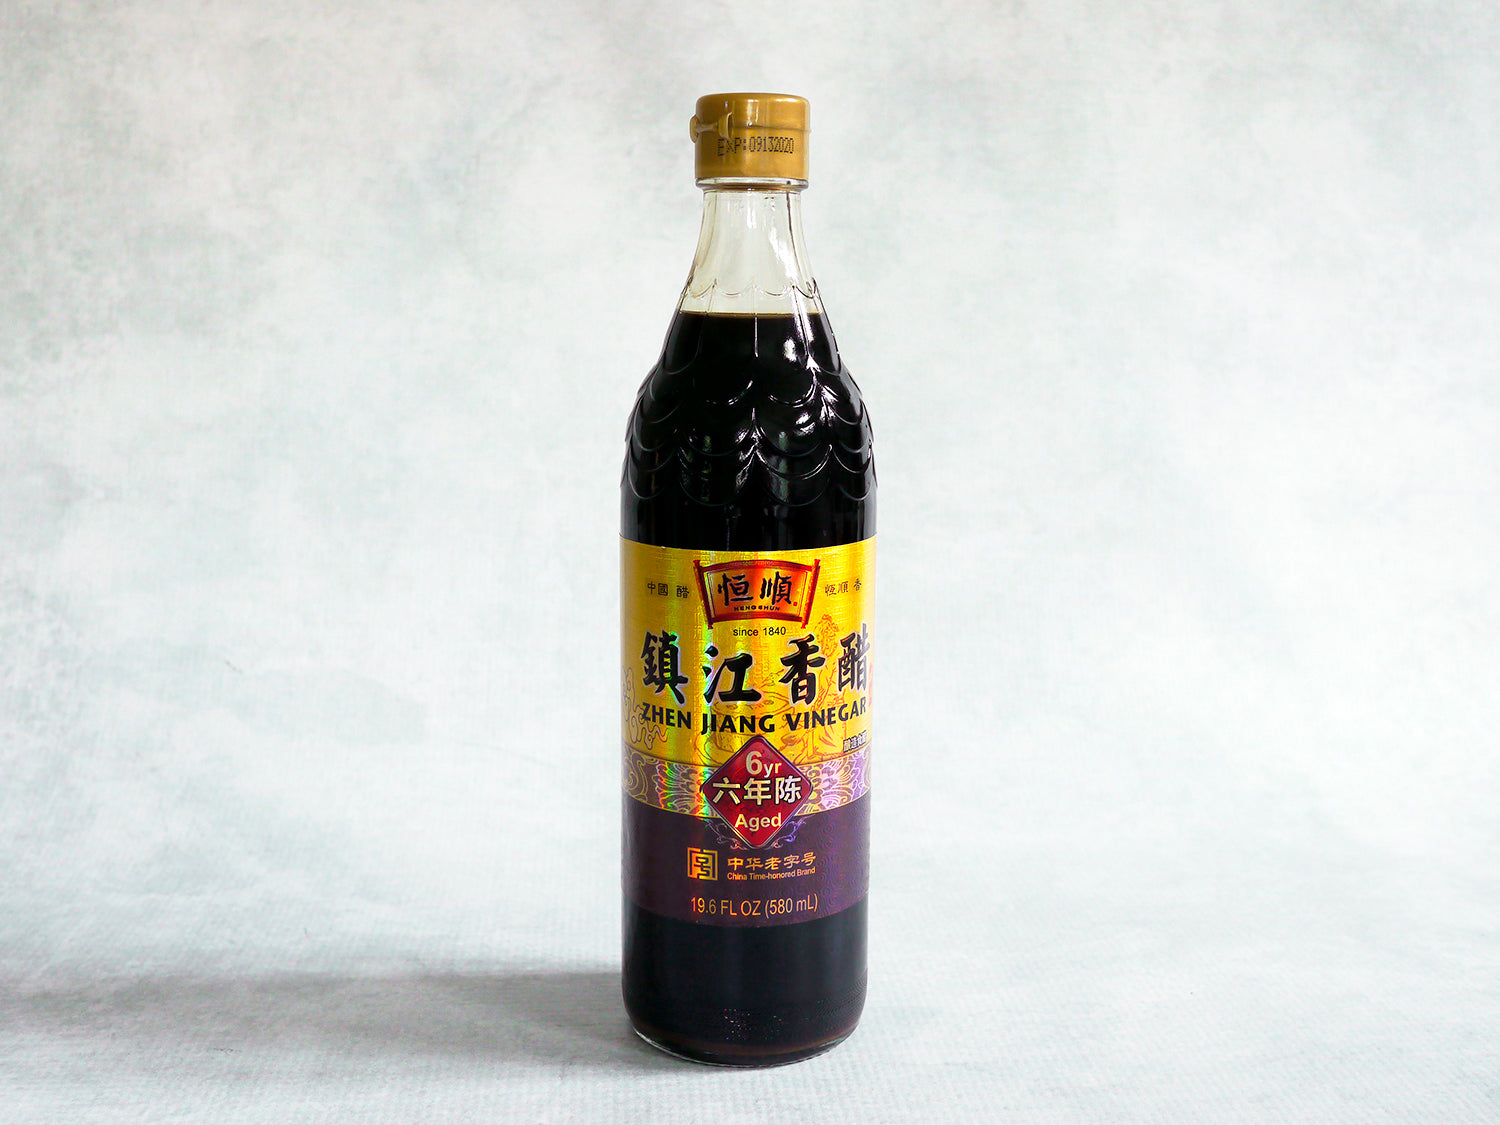 6-Year Zhenjiang Vinegar